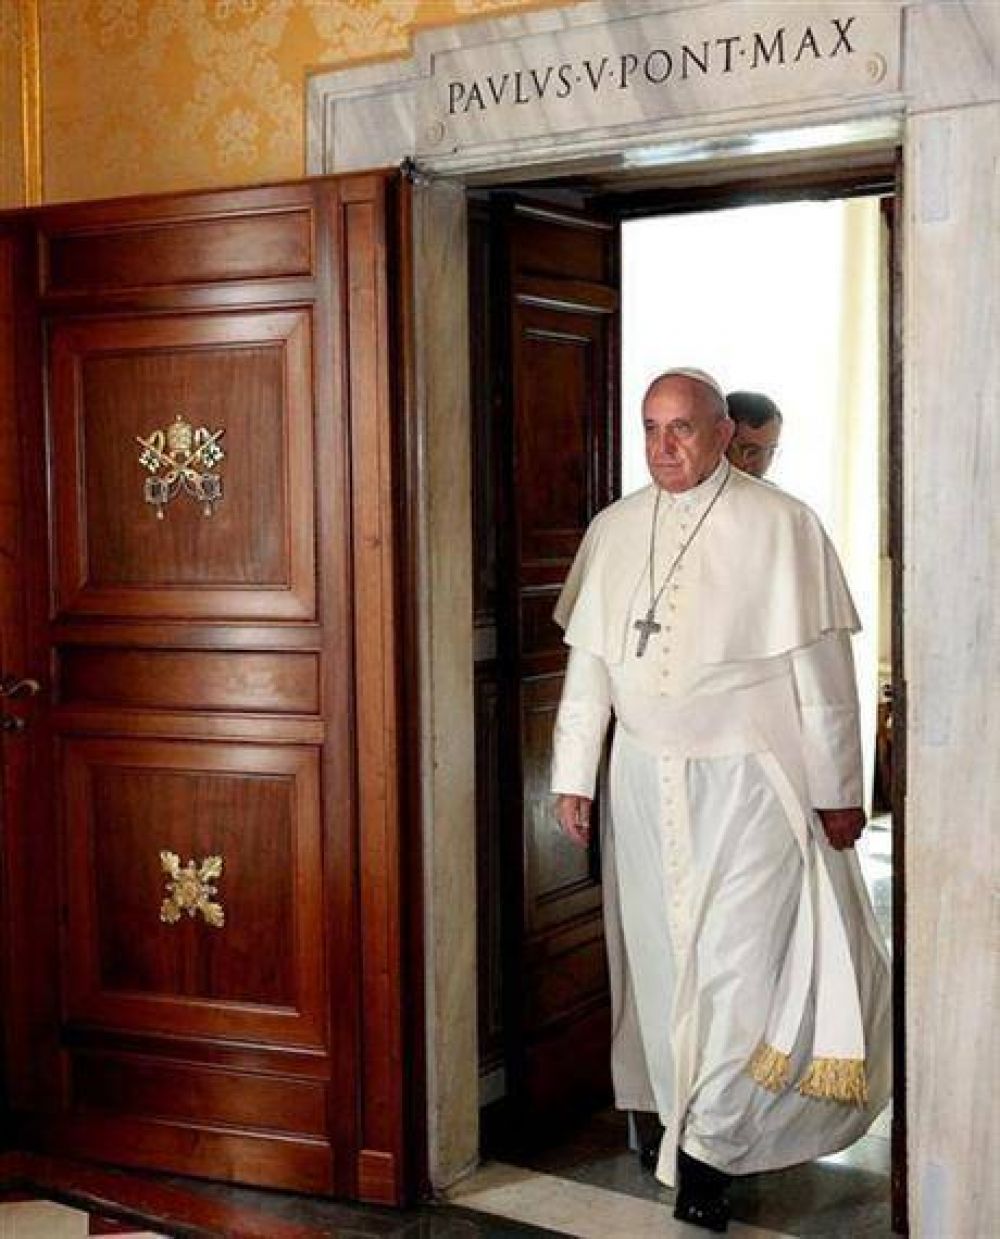 Comienza el sínodo sobre temas de familia, la gran apuesta del Papa